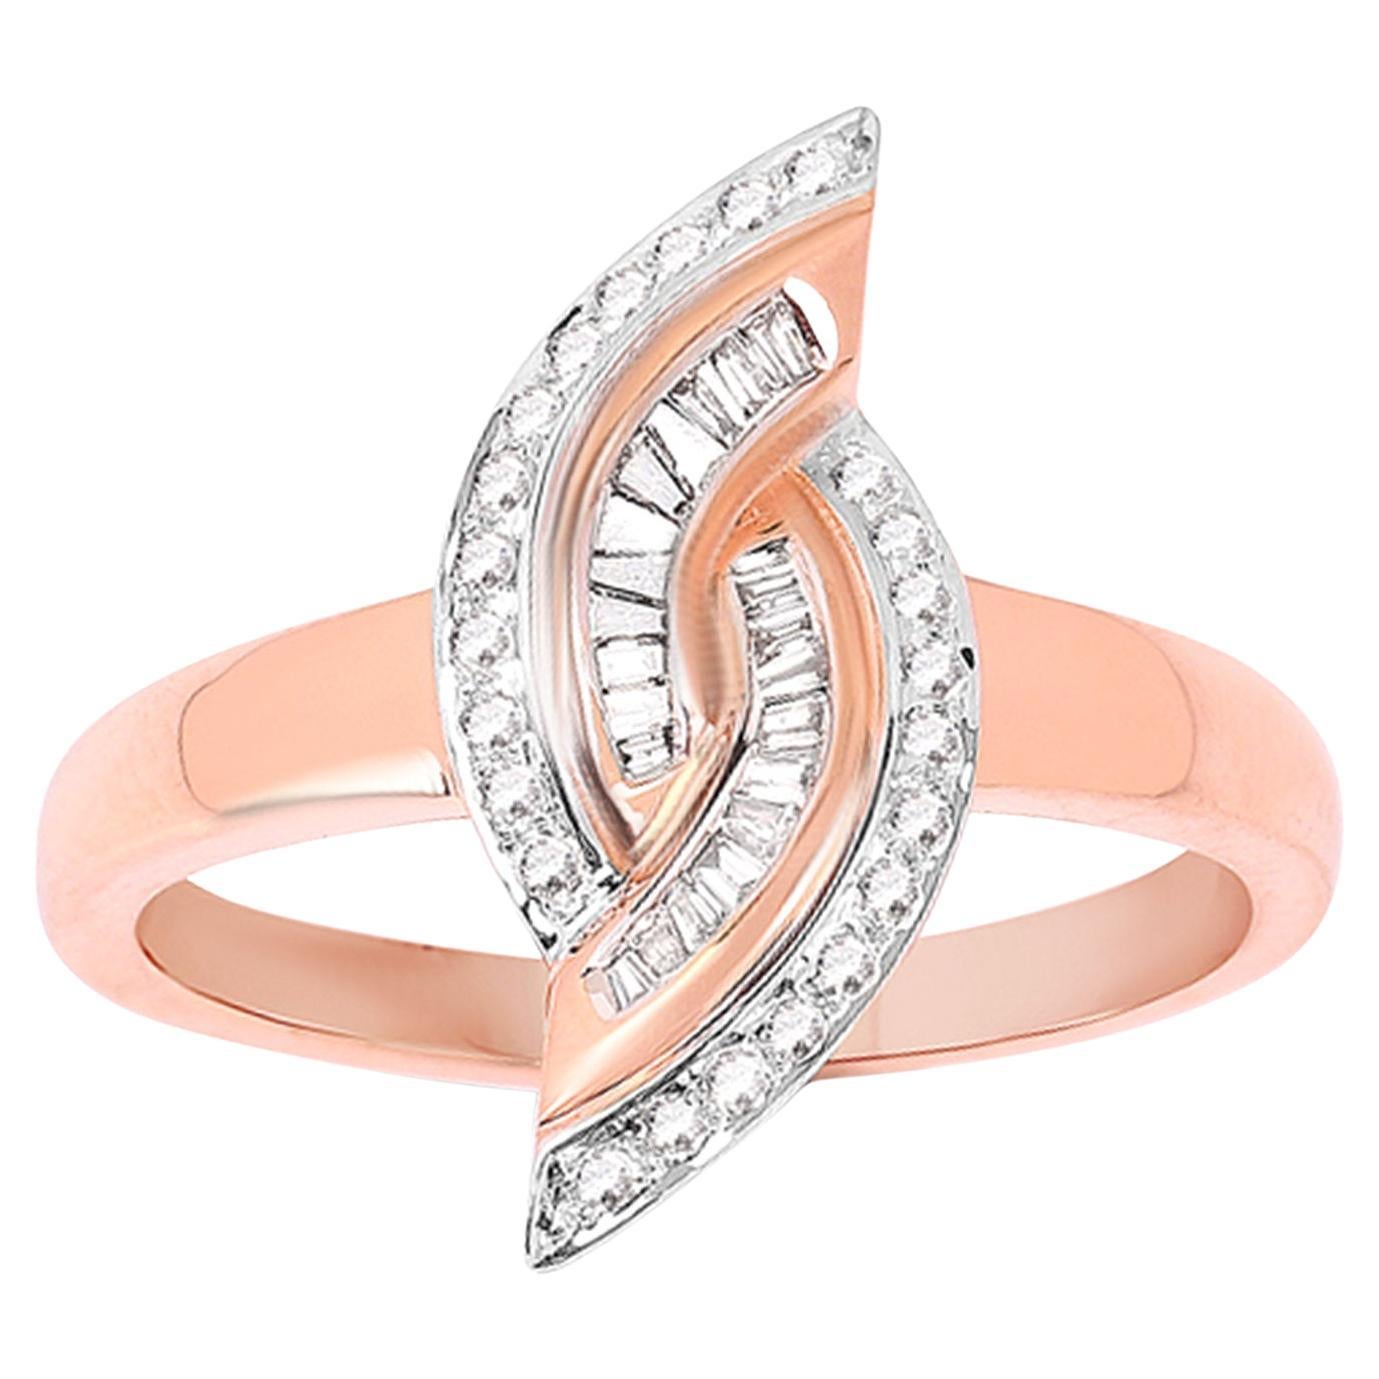 IGI Certified Diamond Ring  0.29 Carats 14K Rose Gold